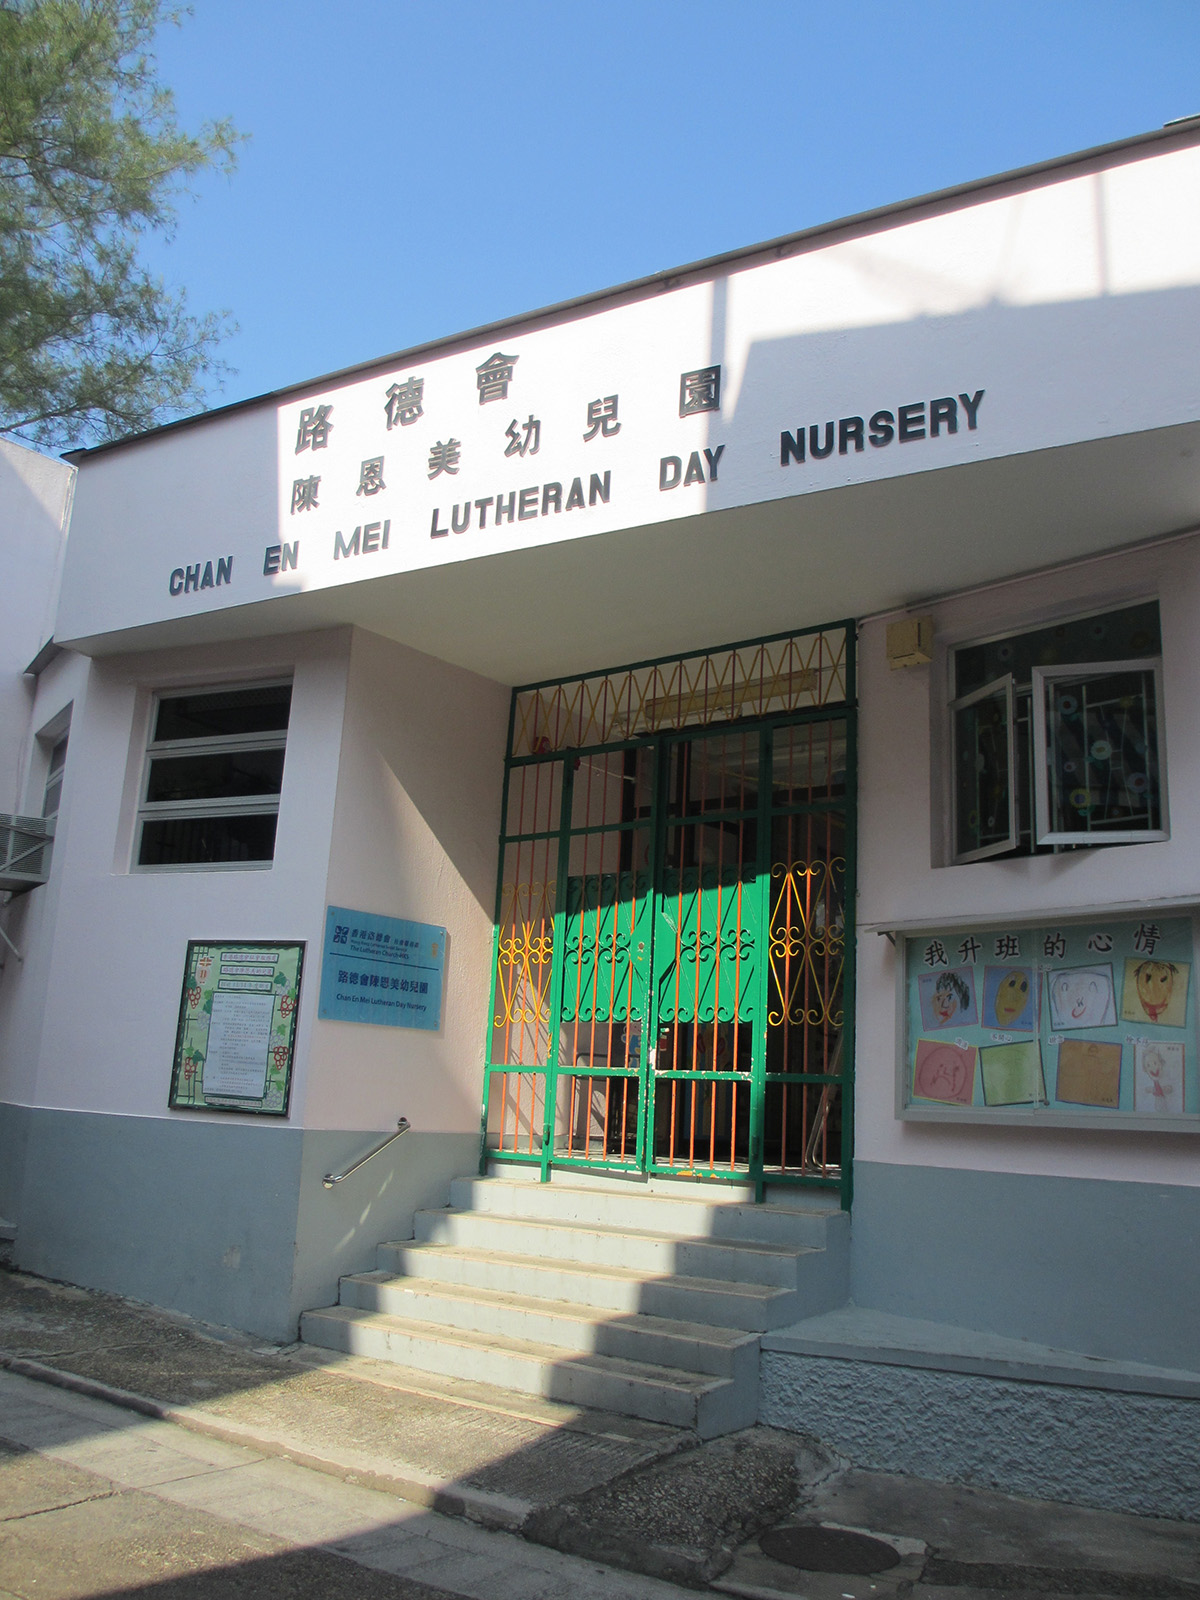 Chan En Mei Lutheran Day Nursery